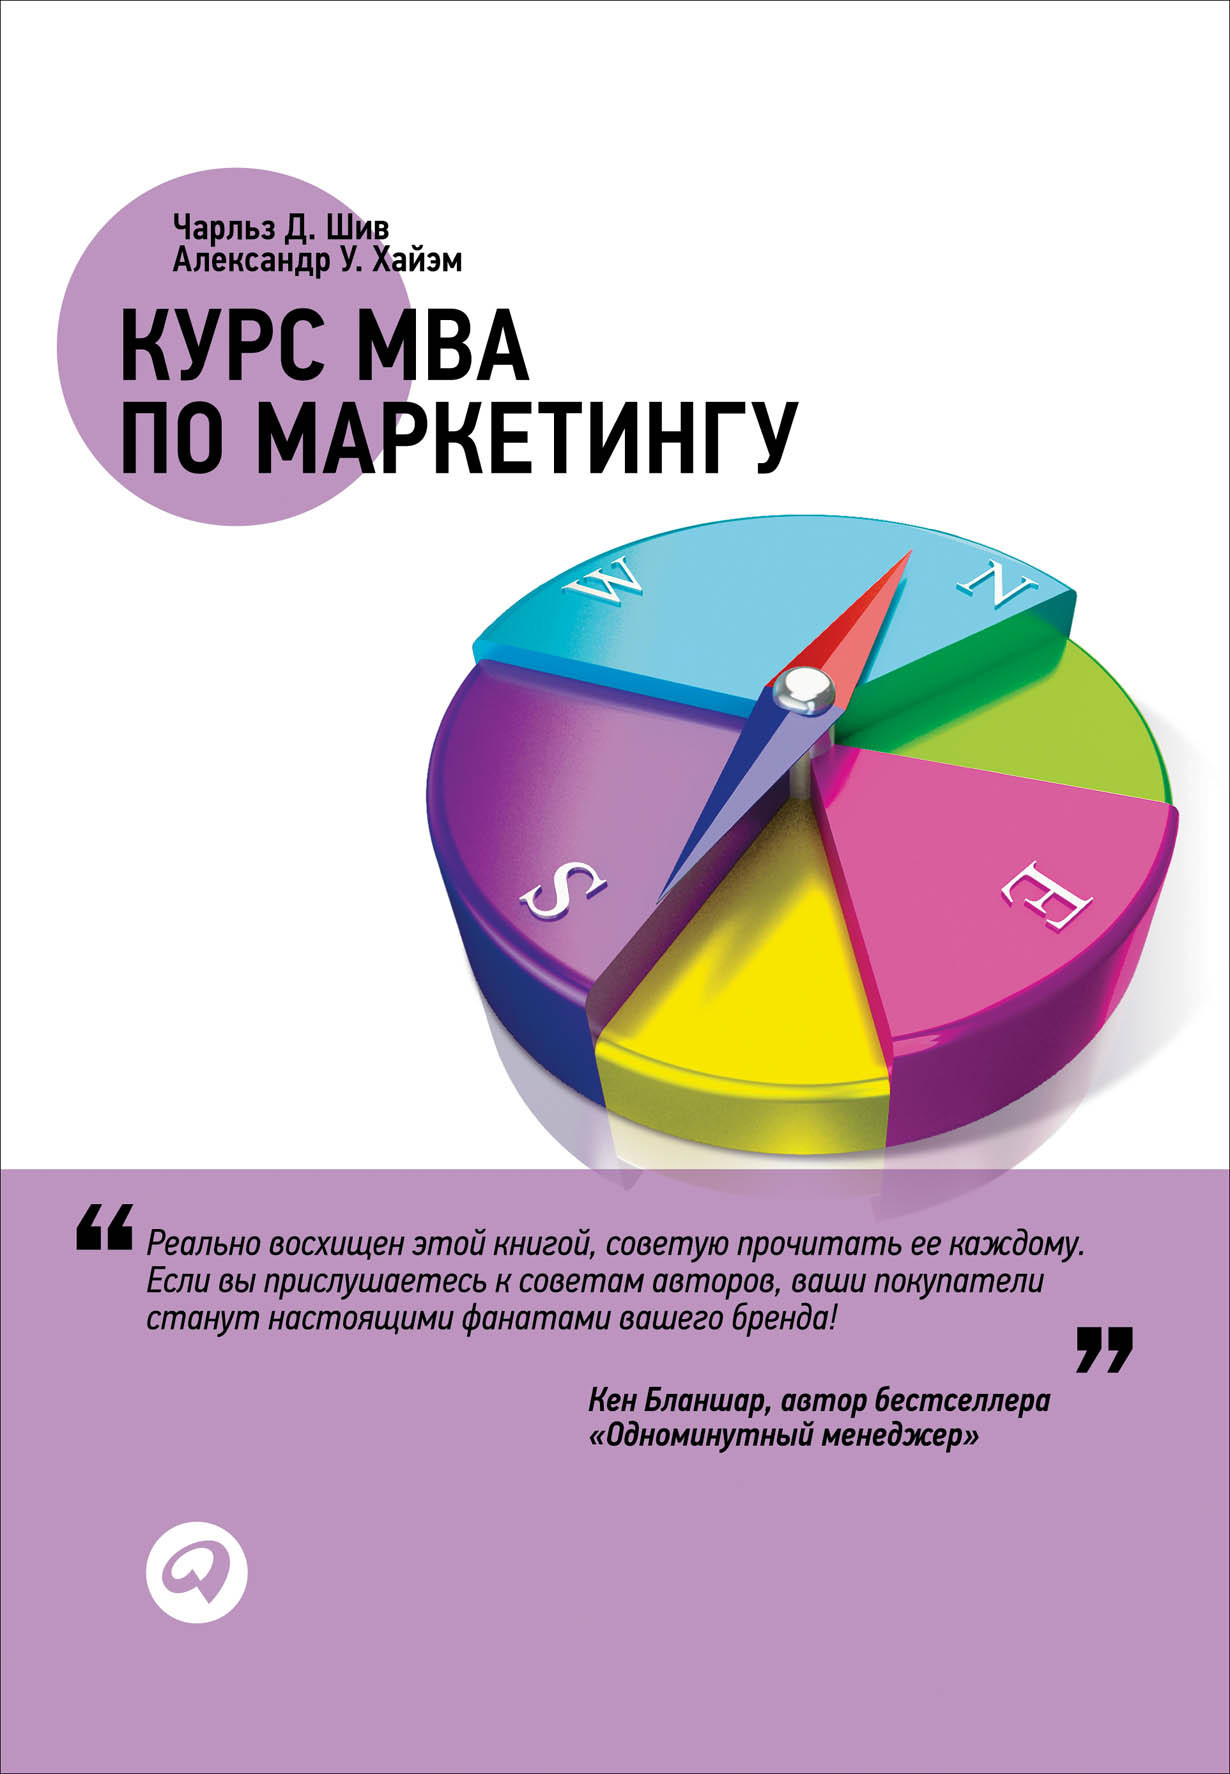 Курс MBA по маркетингу обложка.